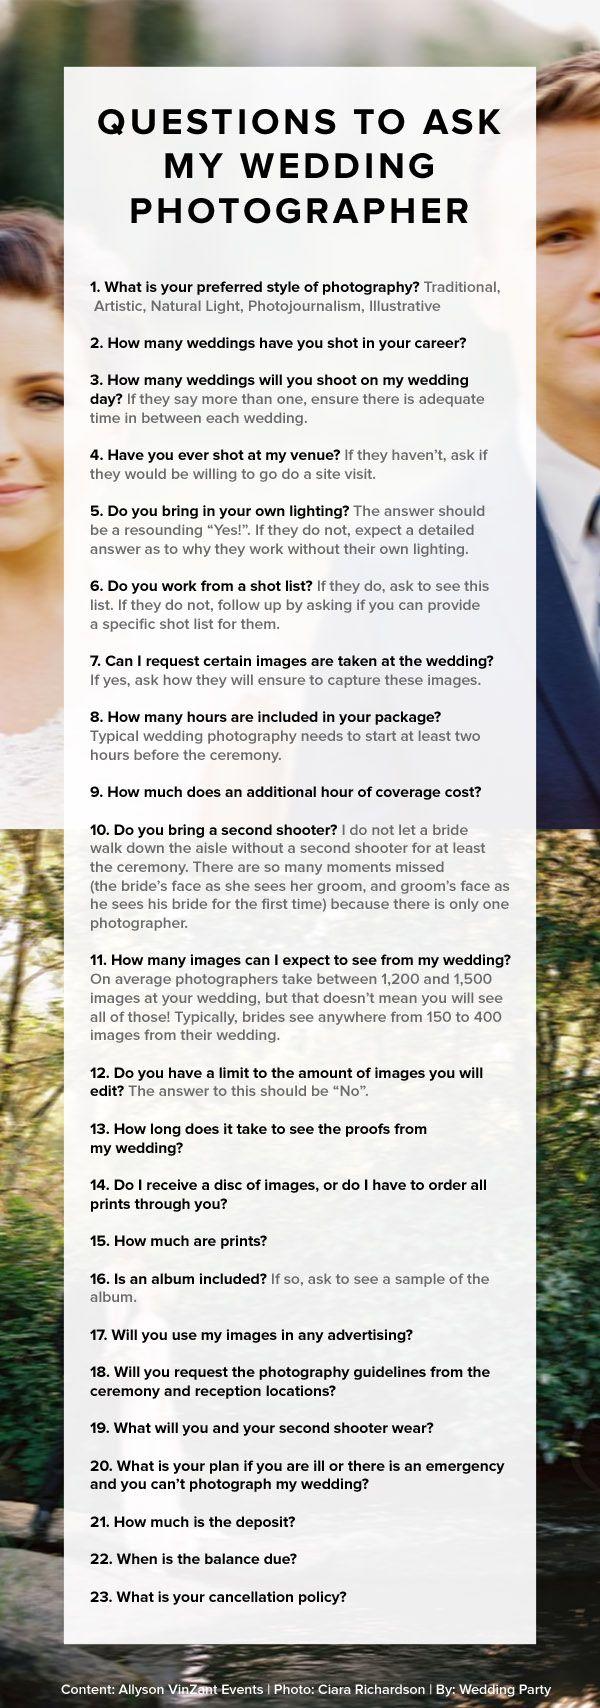 Mariage - Questions à poser mon photographe de mariage par Allyson Vinzant événements